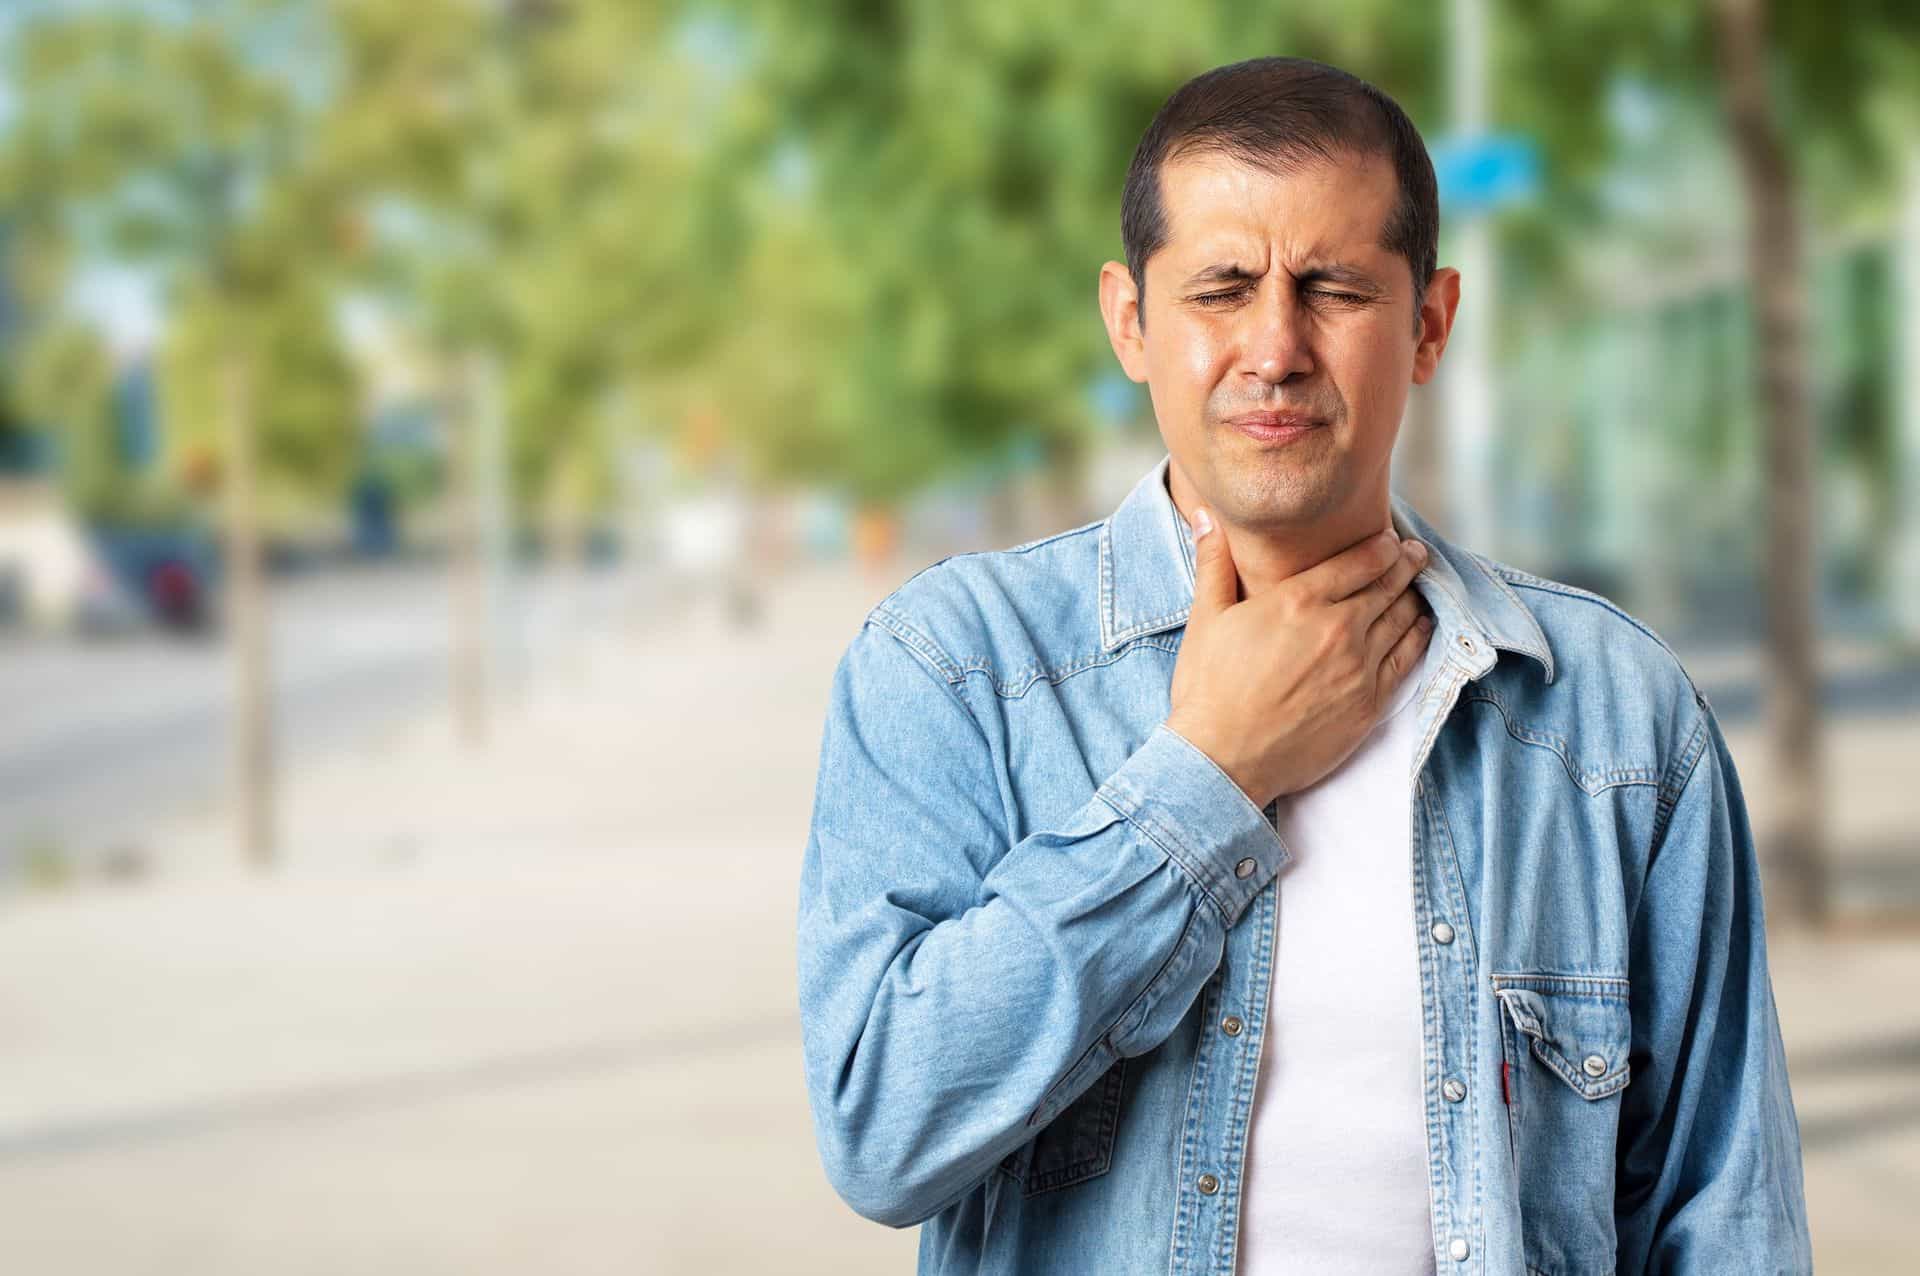 Dolor de garganta y alergias : qué relación tienen